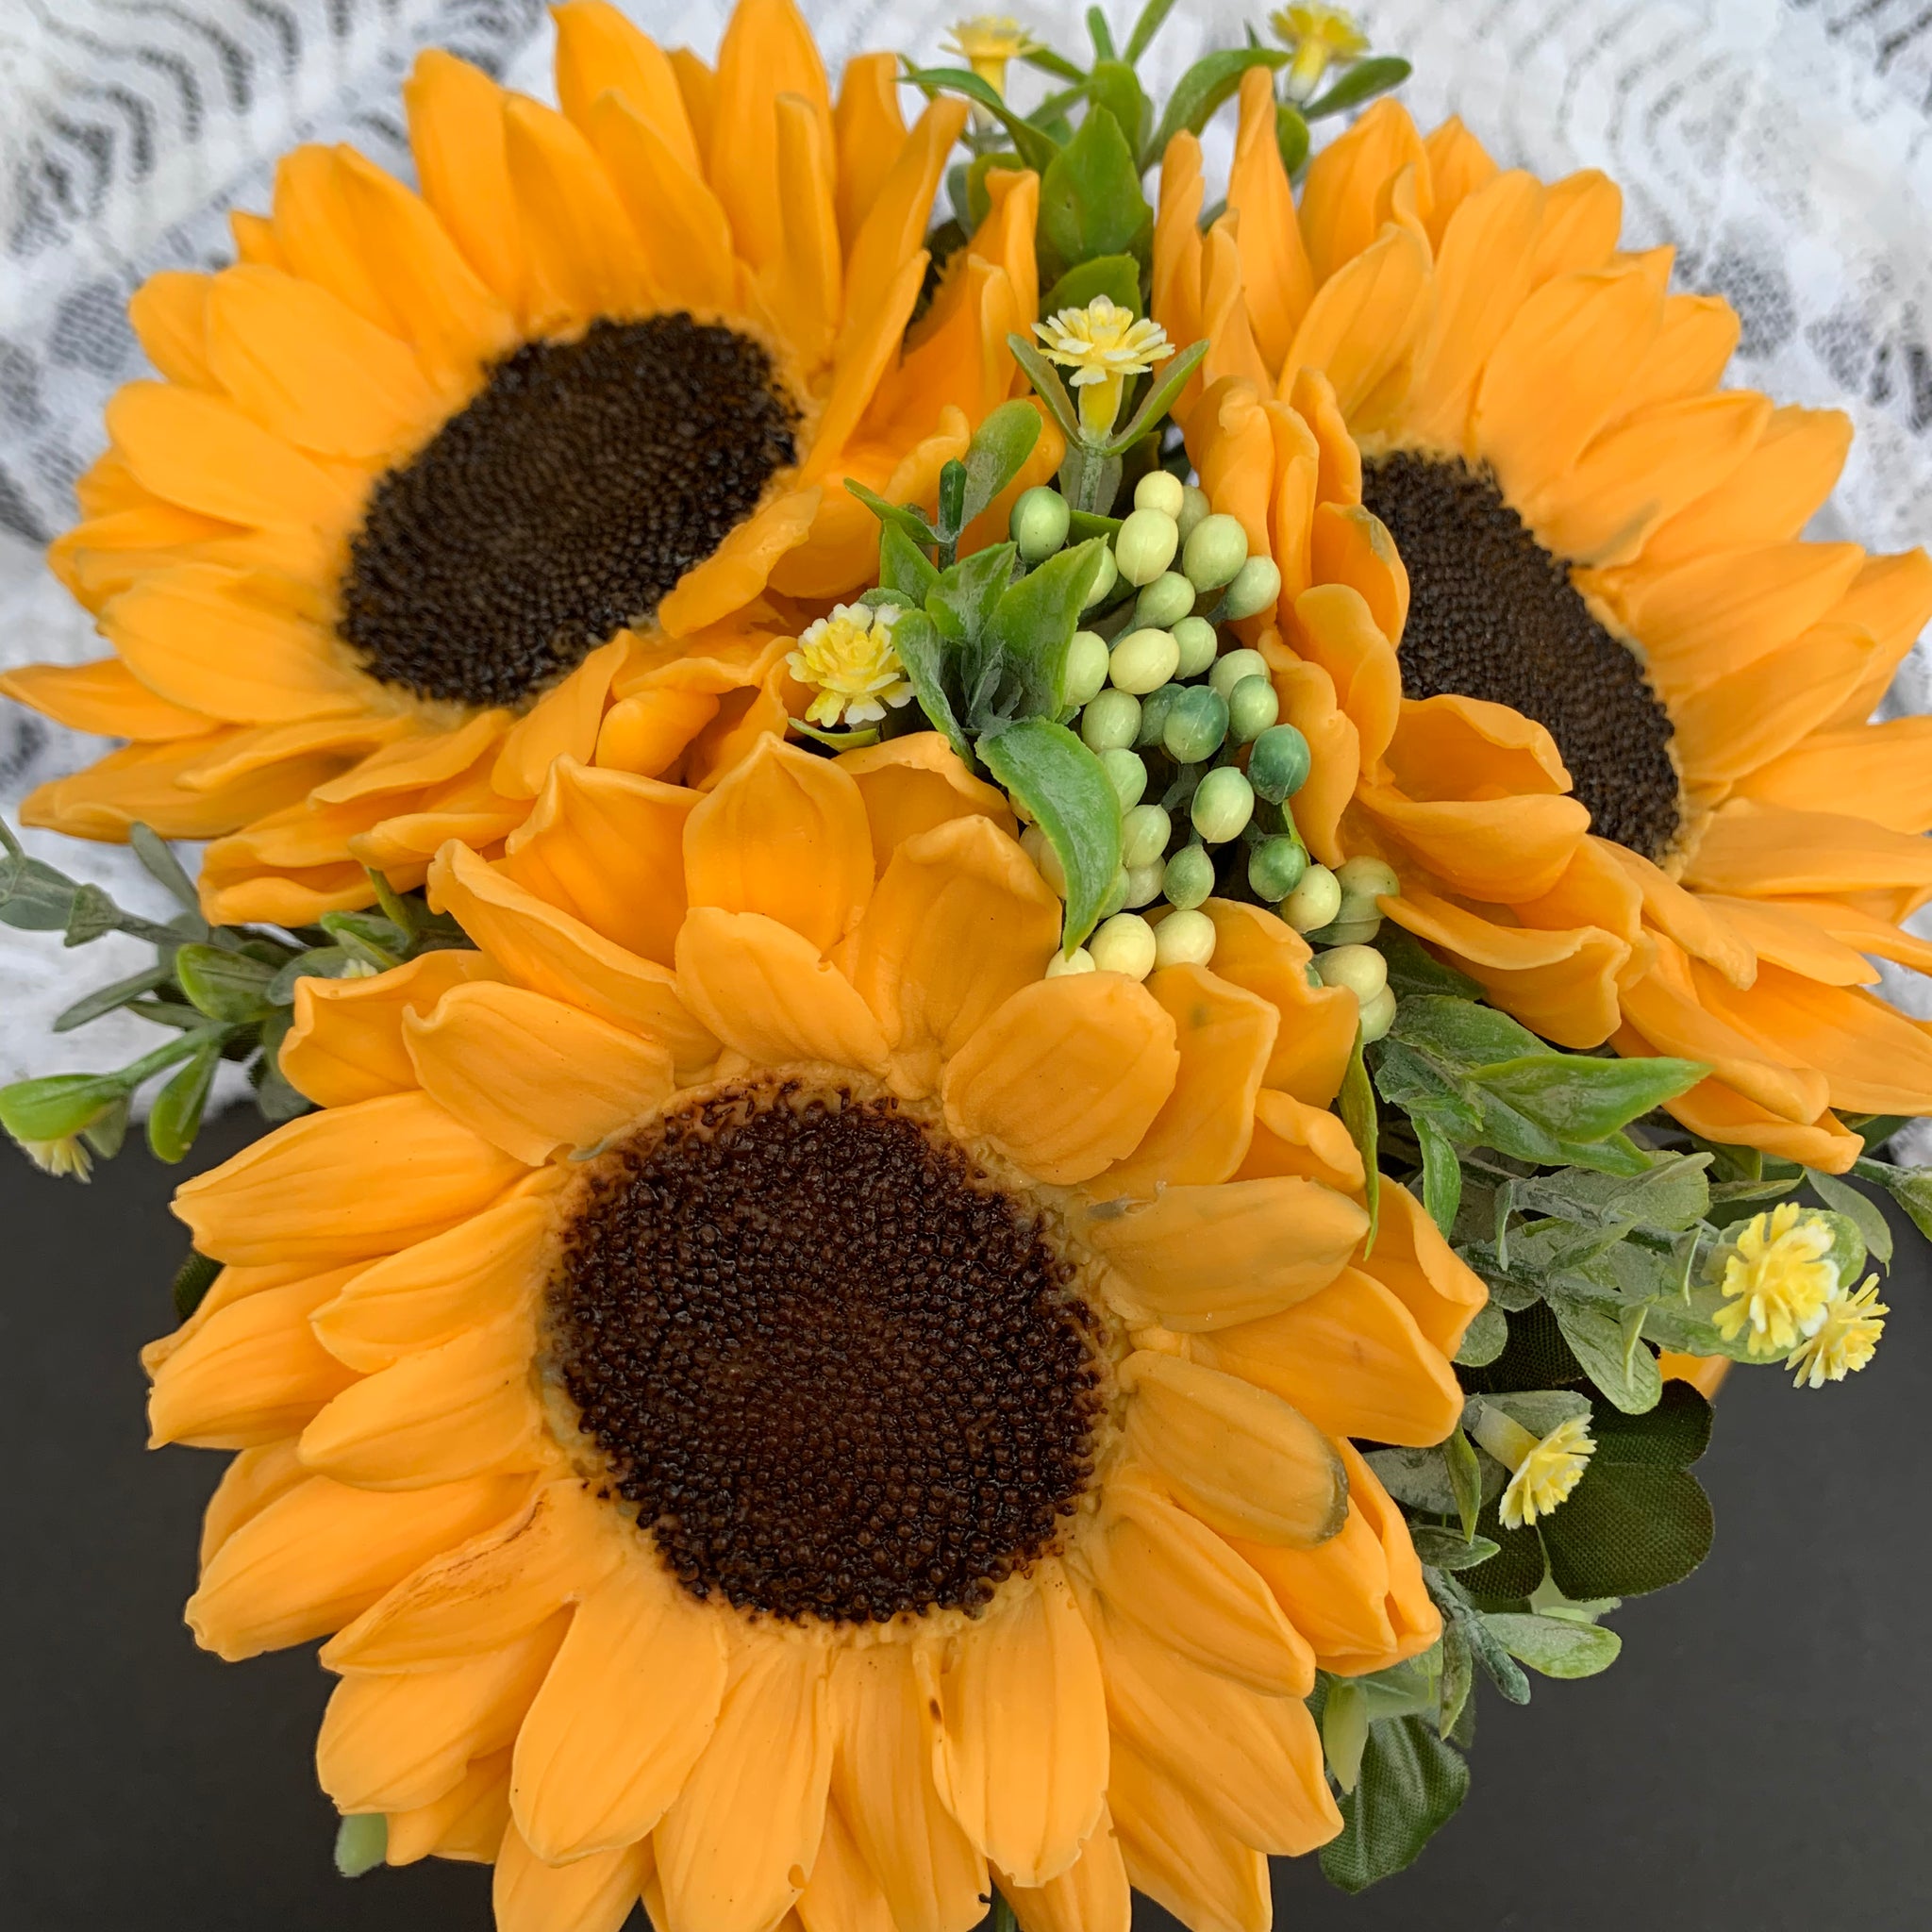 Sunflowers flower arrangement